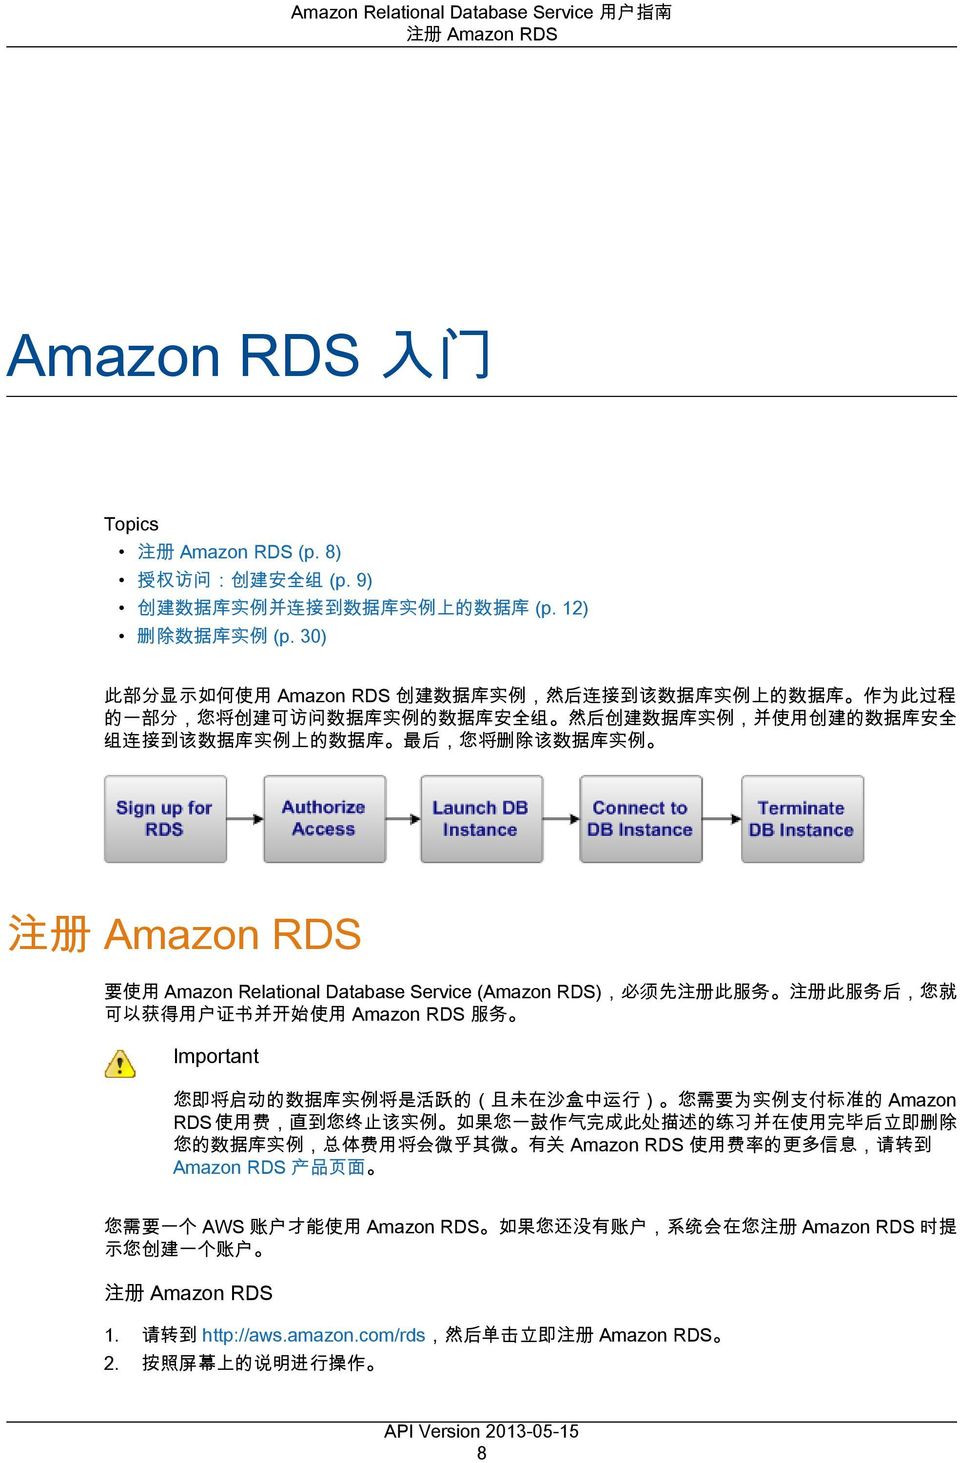 的 数 据 库 最 后, 您 将 删 除 该 数 据 库 实 例 注 册 Amazon RDS 要 使 用 Amazon Relational Database Service (Amazon RDS), 必 须 先 注 册 此 服 务 注 册 此 服 务 后, 您 就 可 以 获 得 用 户 证 书 并 开 始 使 用 Amazon RDS 服 务 Important 您 即 将 启 动 的